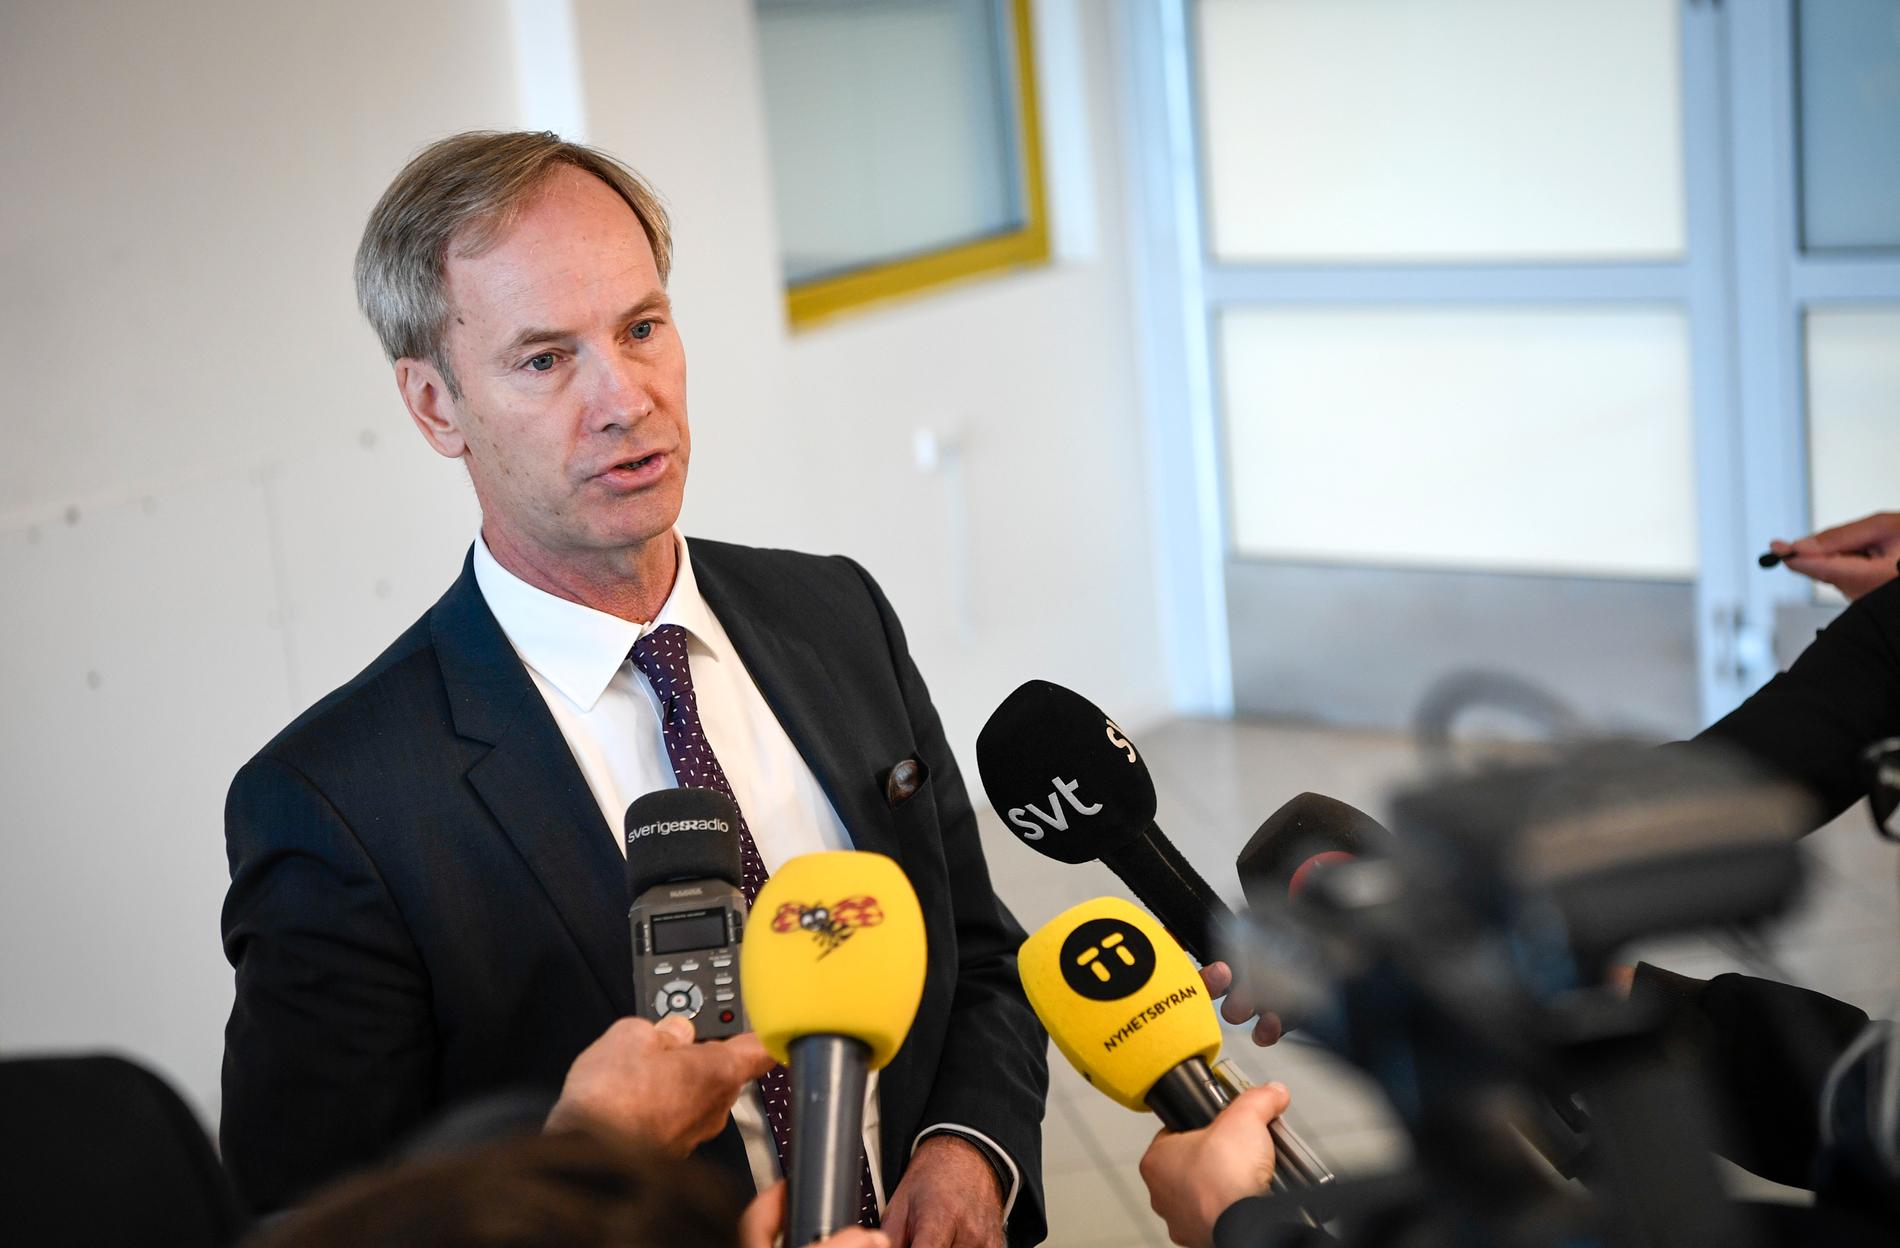 Sveriges FN-ambassadör Olof Skoog höll en pressträff på Sturup flygplats efter säkerhetsrådets möte på Dag Hammarskjölds Backåkra i Skåne i helgen.